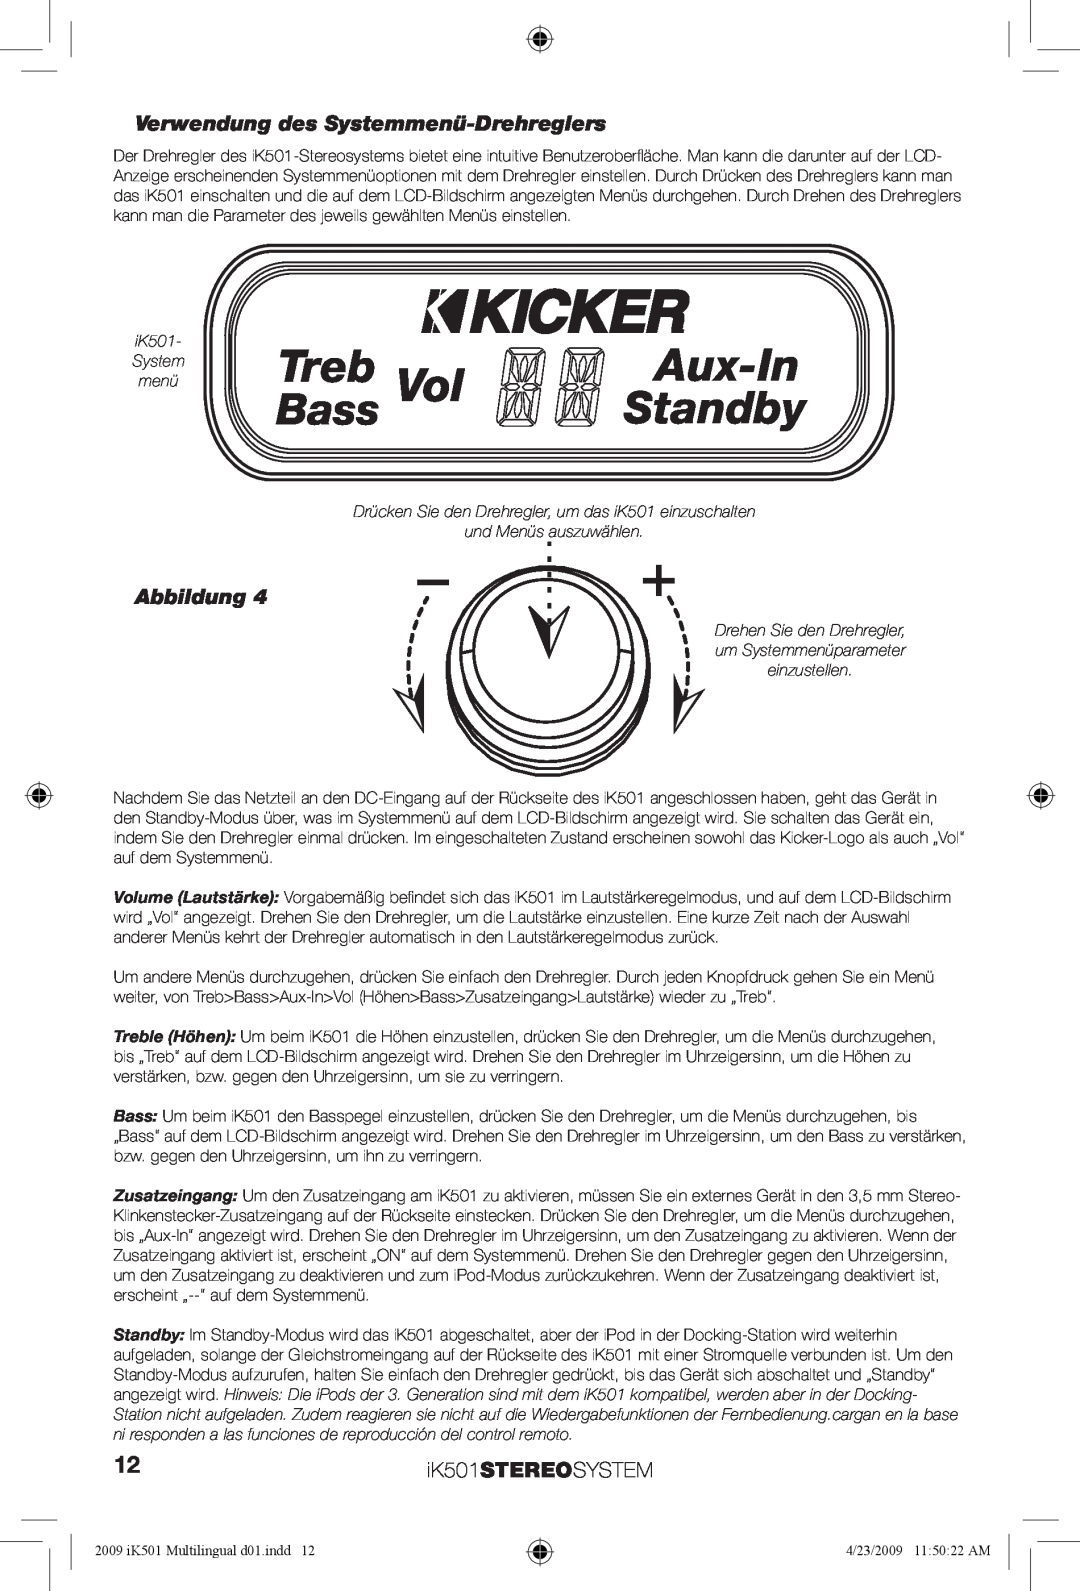 Kicker manual Verwendung des Systemmenü-Drehreglers, Treb, Aux-In, Standby, Bass, Abbildung, iK501STEREOSYSTEM 